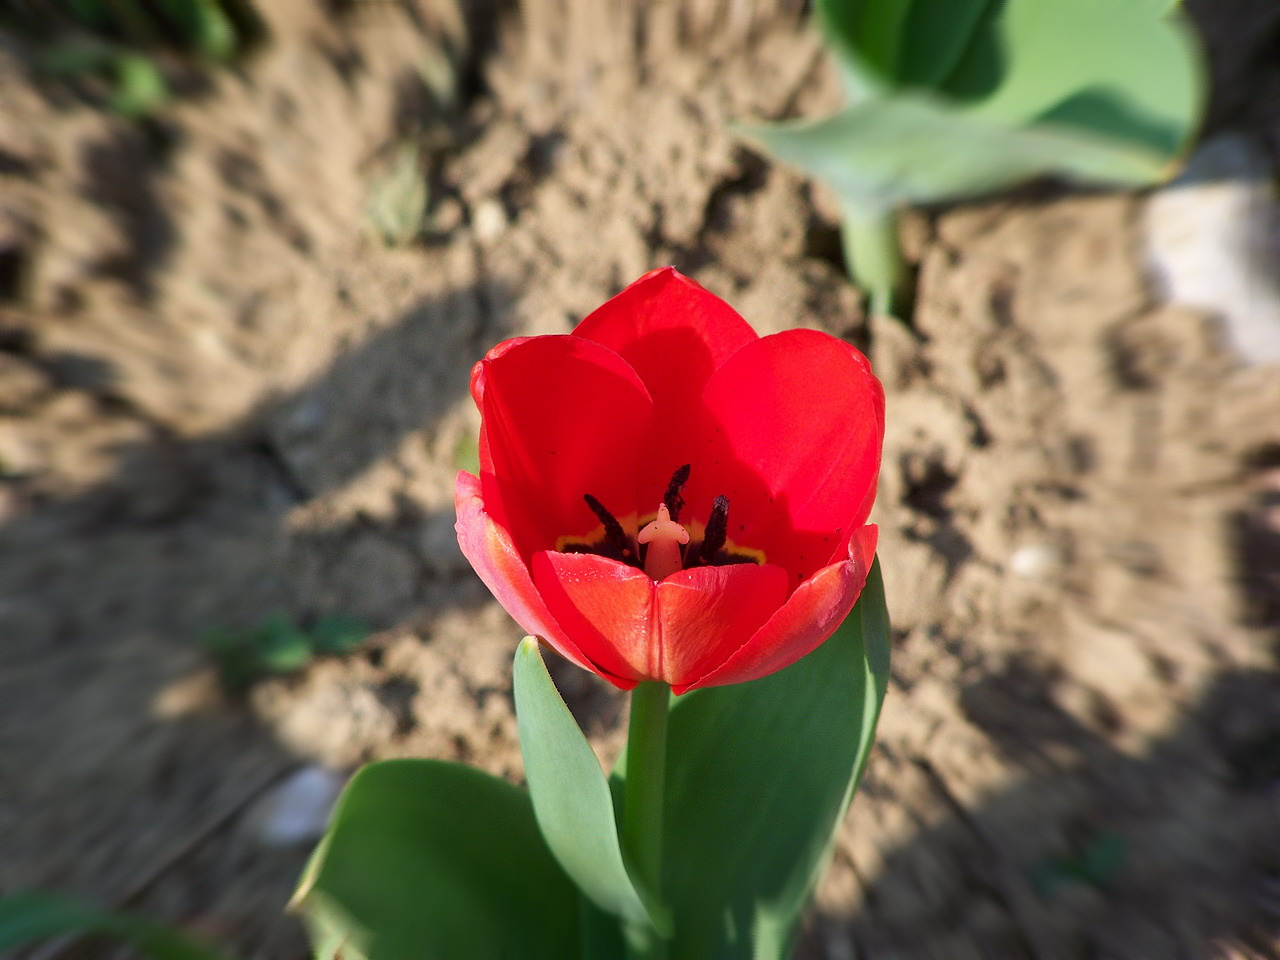 tulipán, egy ragyogó piros